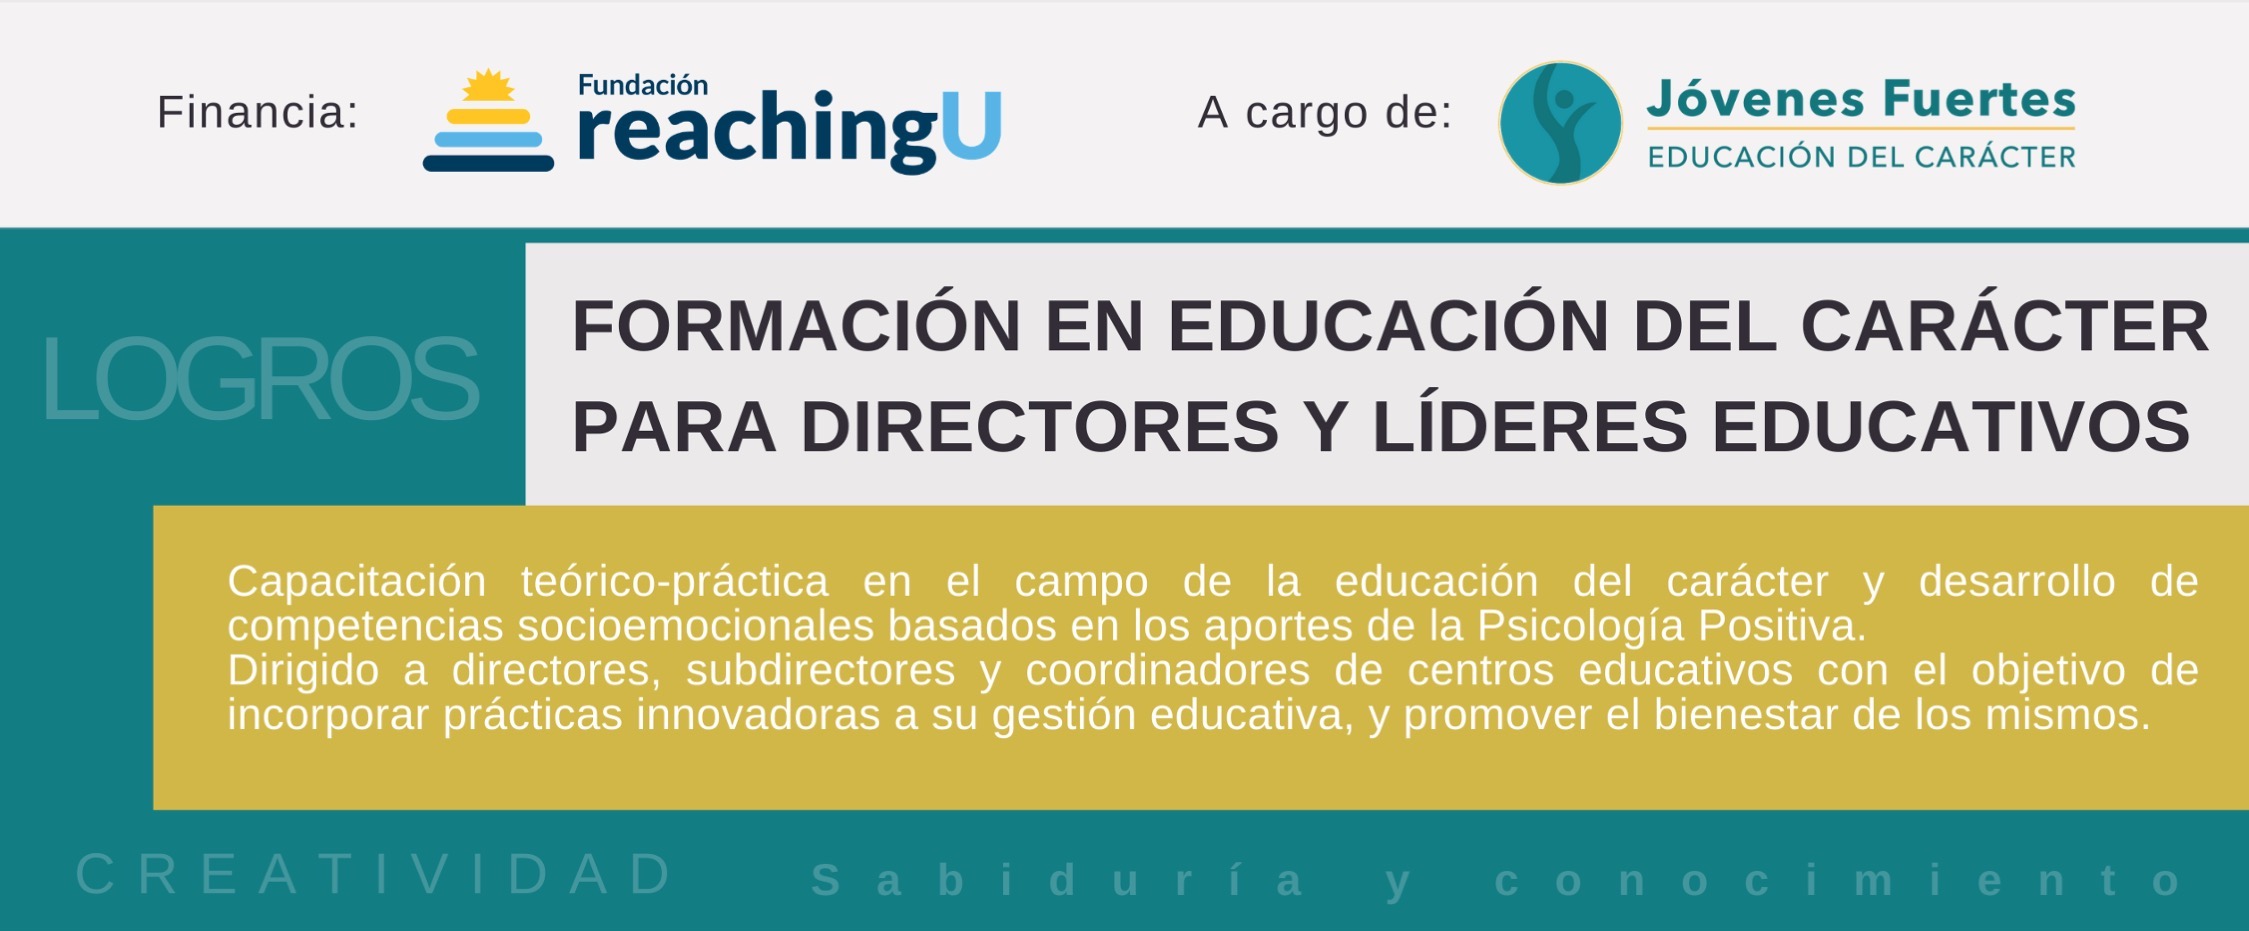 Banner Formación en educación del carácter para directores y líderes educativos